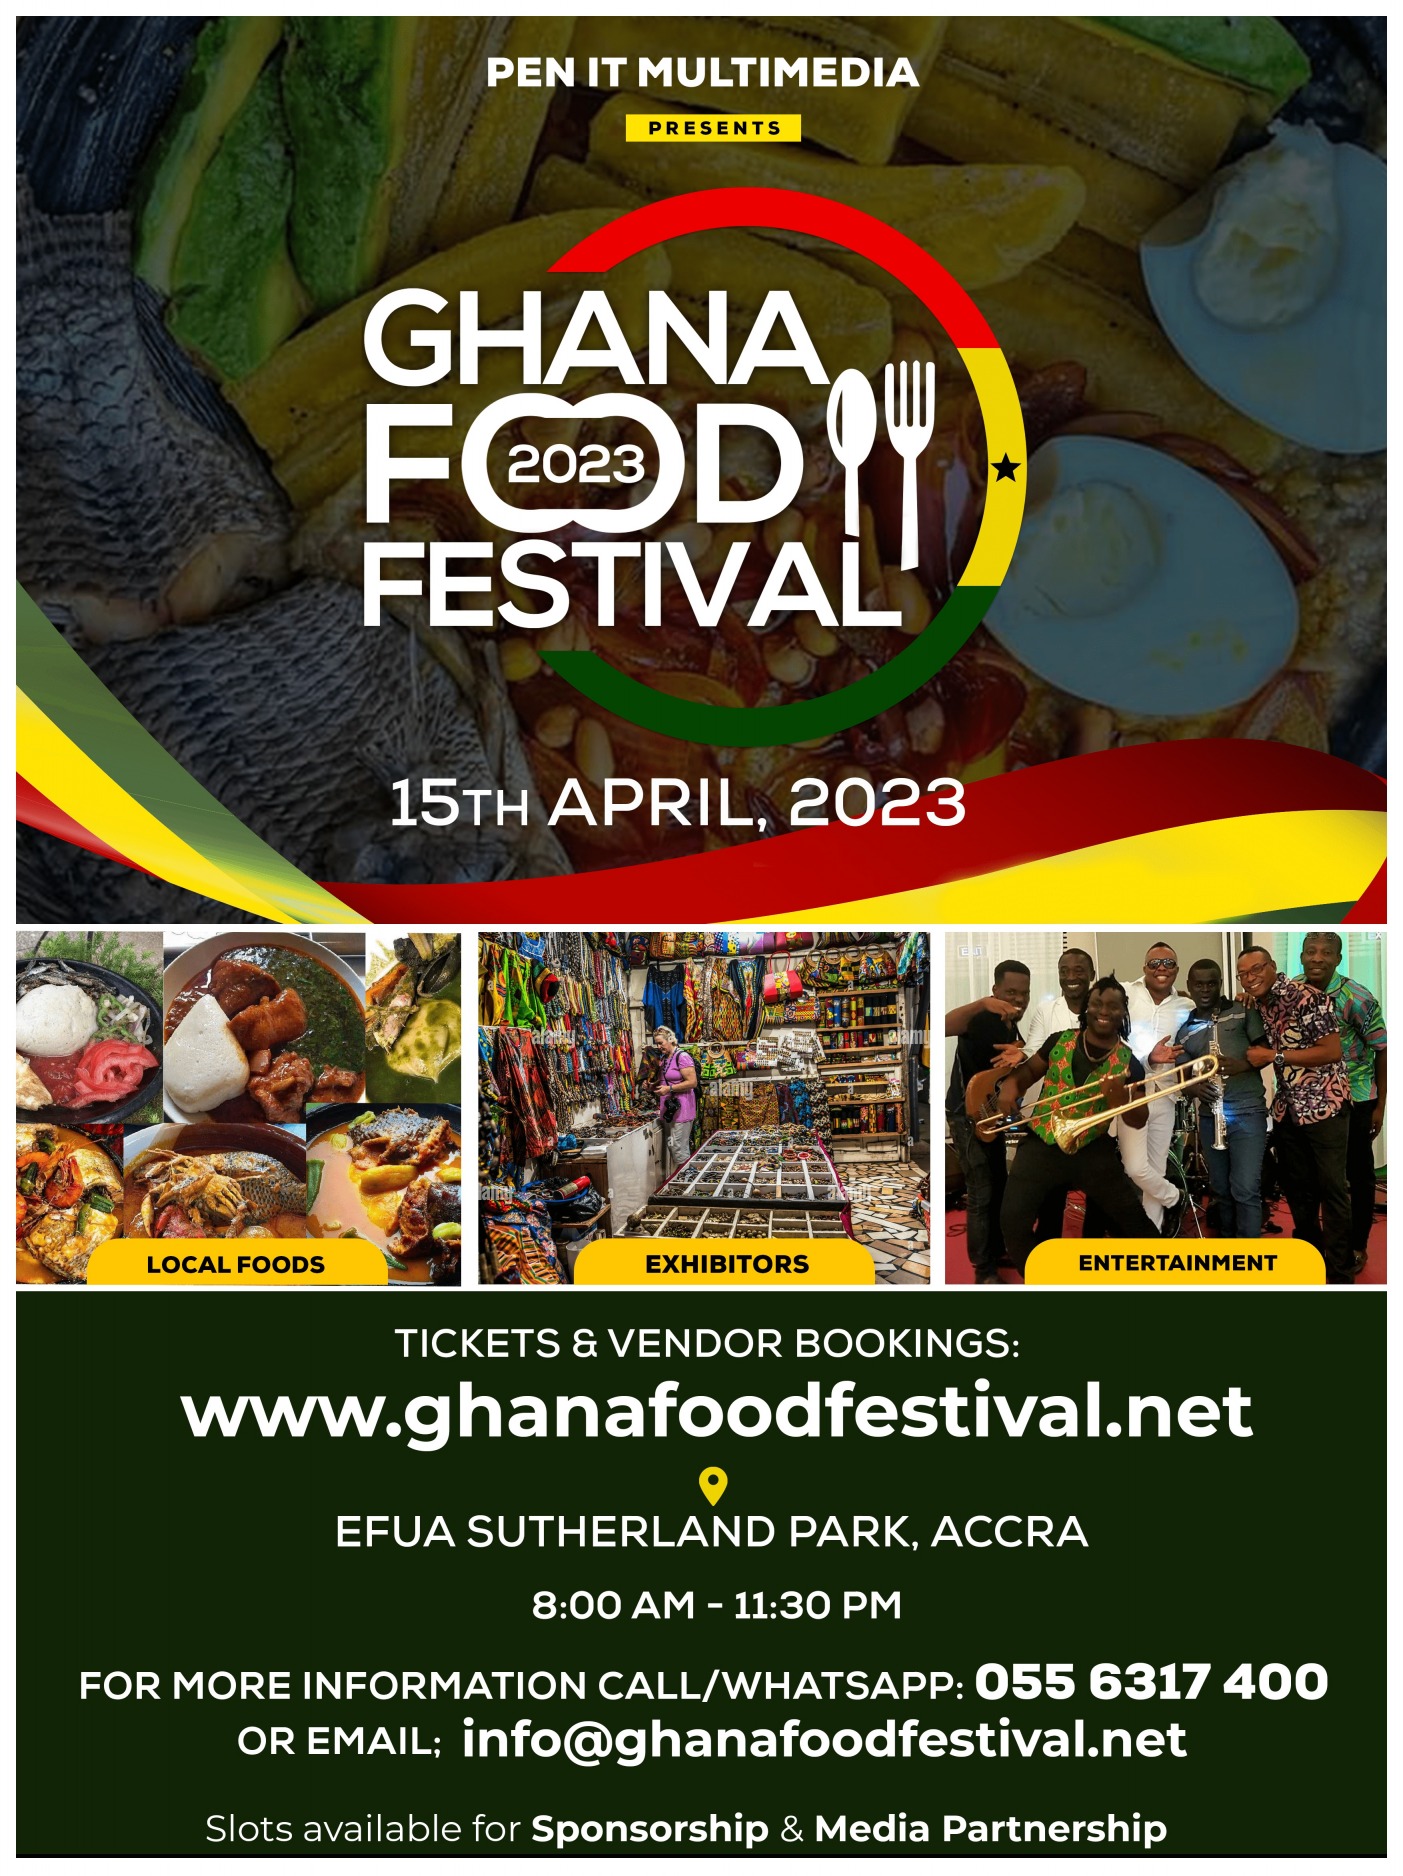 Ghana Food Festival 2023, Ghana Food Festival 2023